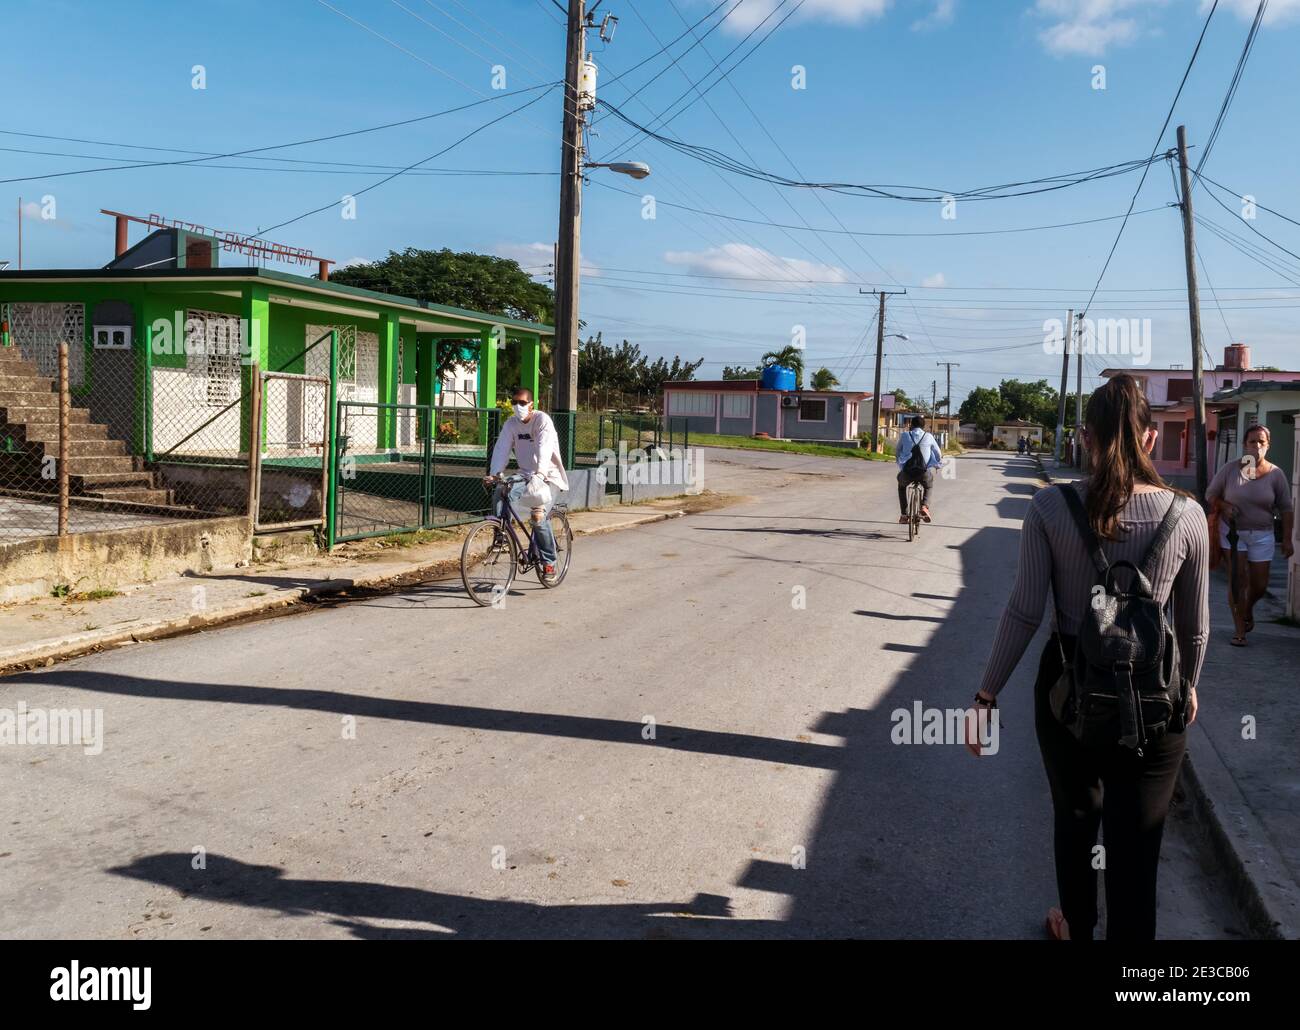 Foto di una strada in una piccola città di Cuba, con poche persone in strada durante i periodi di pandemia, due uomini sono in bicicletta e due donne sono a piedi Foto Stock